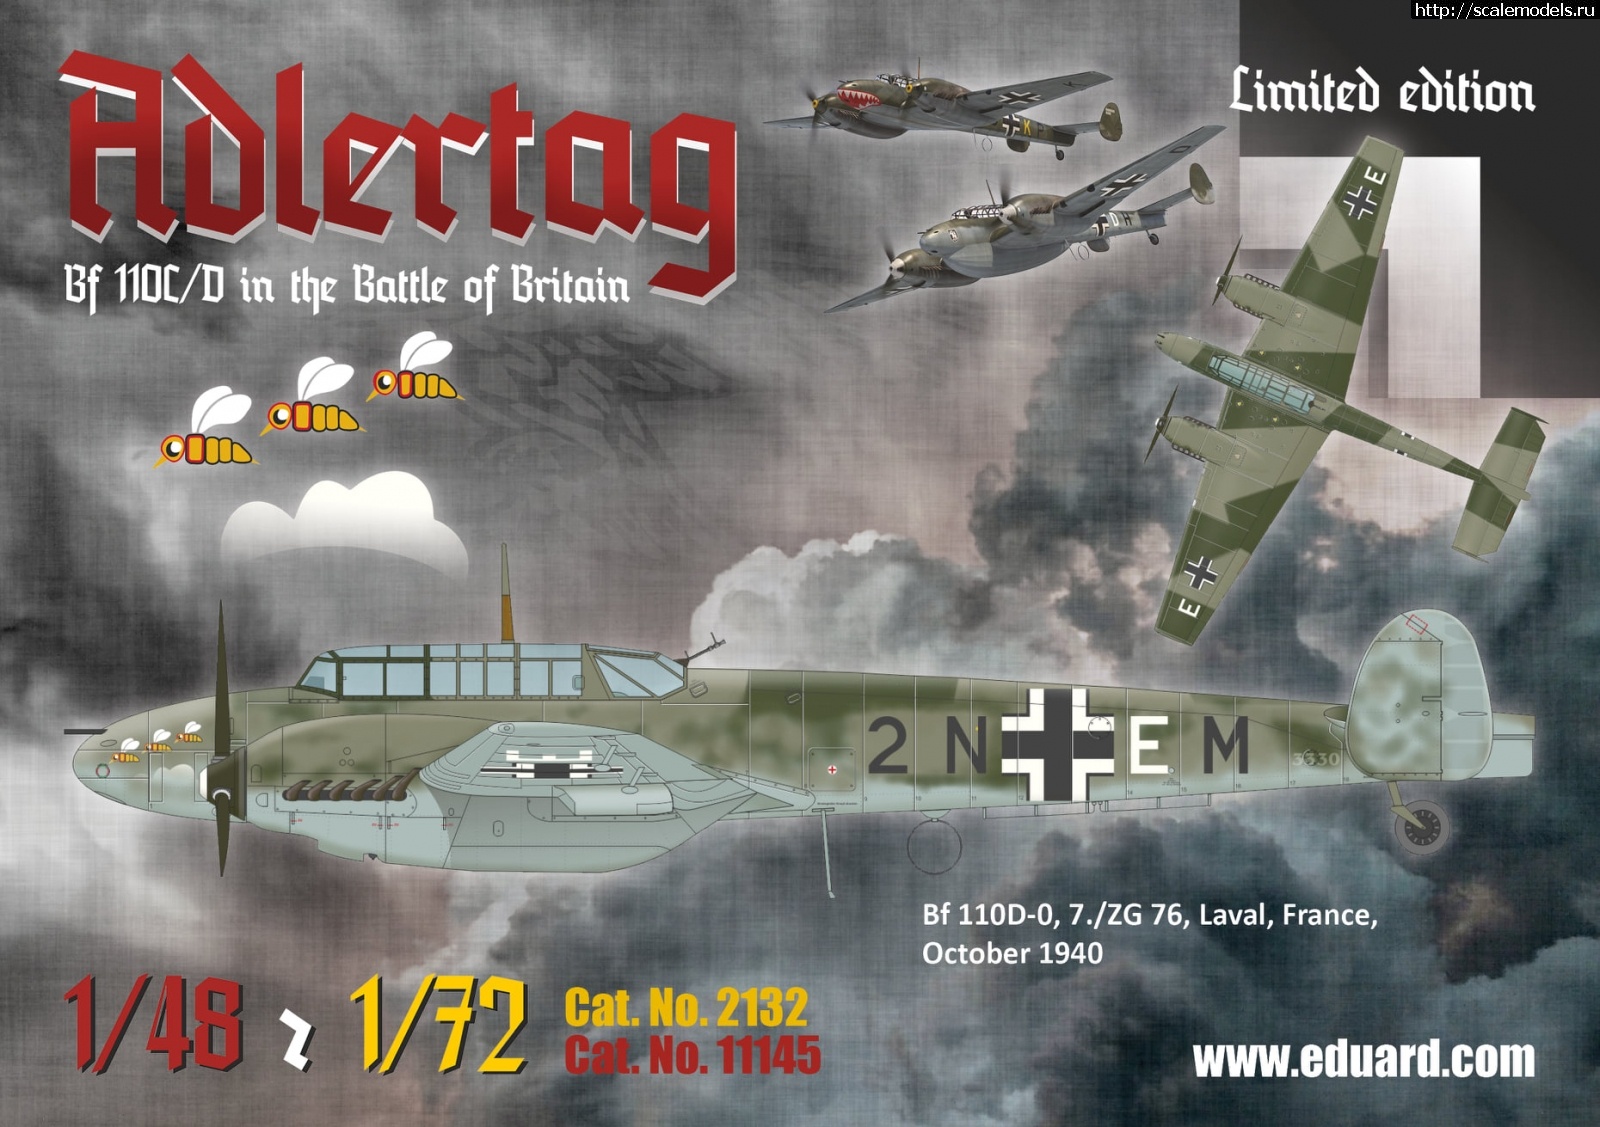 1604573771_123445273_3987468277934756_7440213706609624387_o.jpg :  Eduard 1/48  1/72 Messerschmitt Bf 110C/D Adlertag  